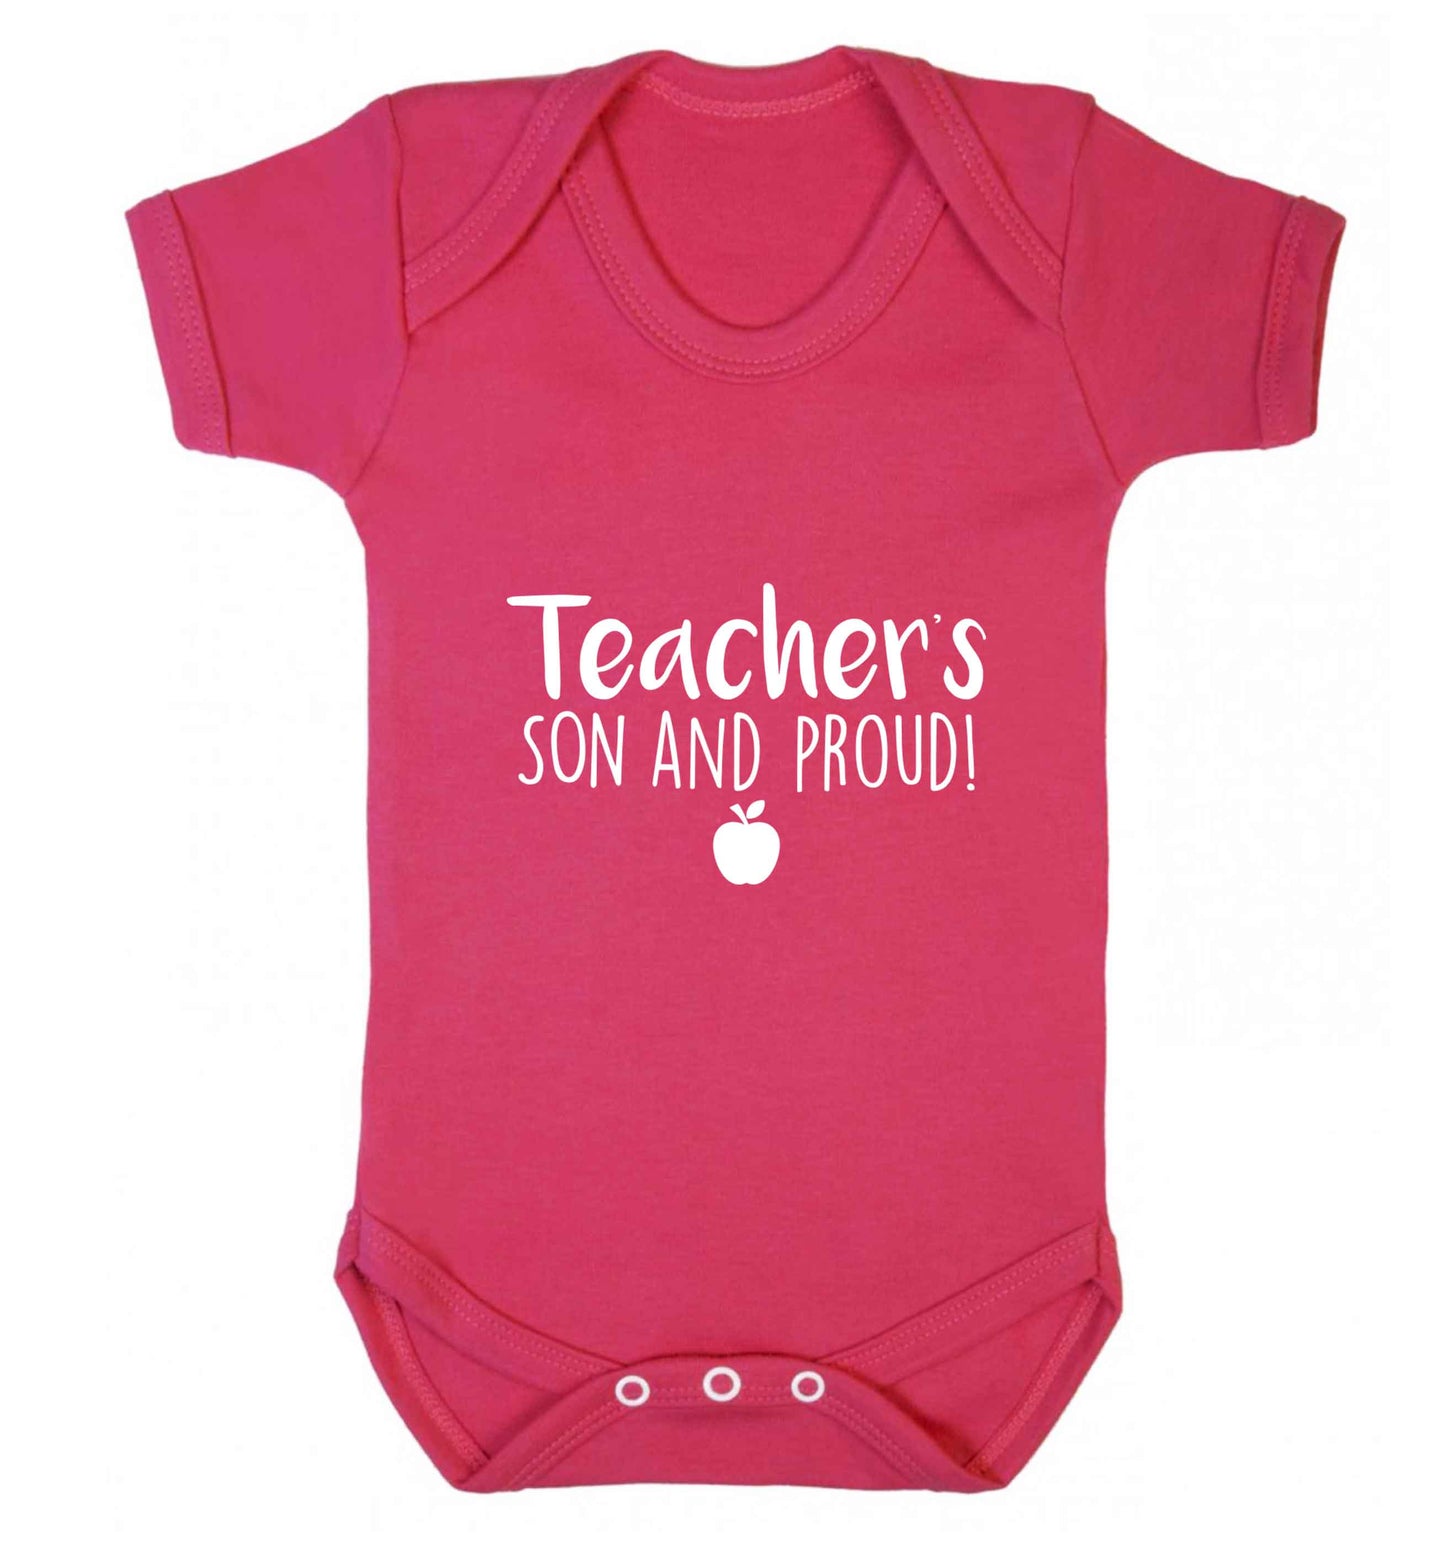 Teachers son and proud baby vest dark pink 18-24 months